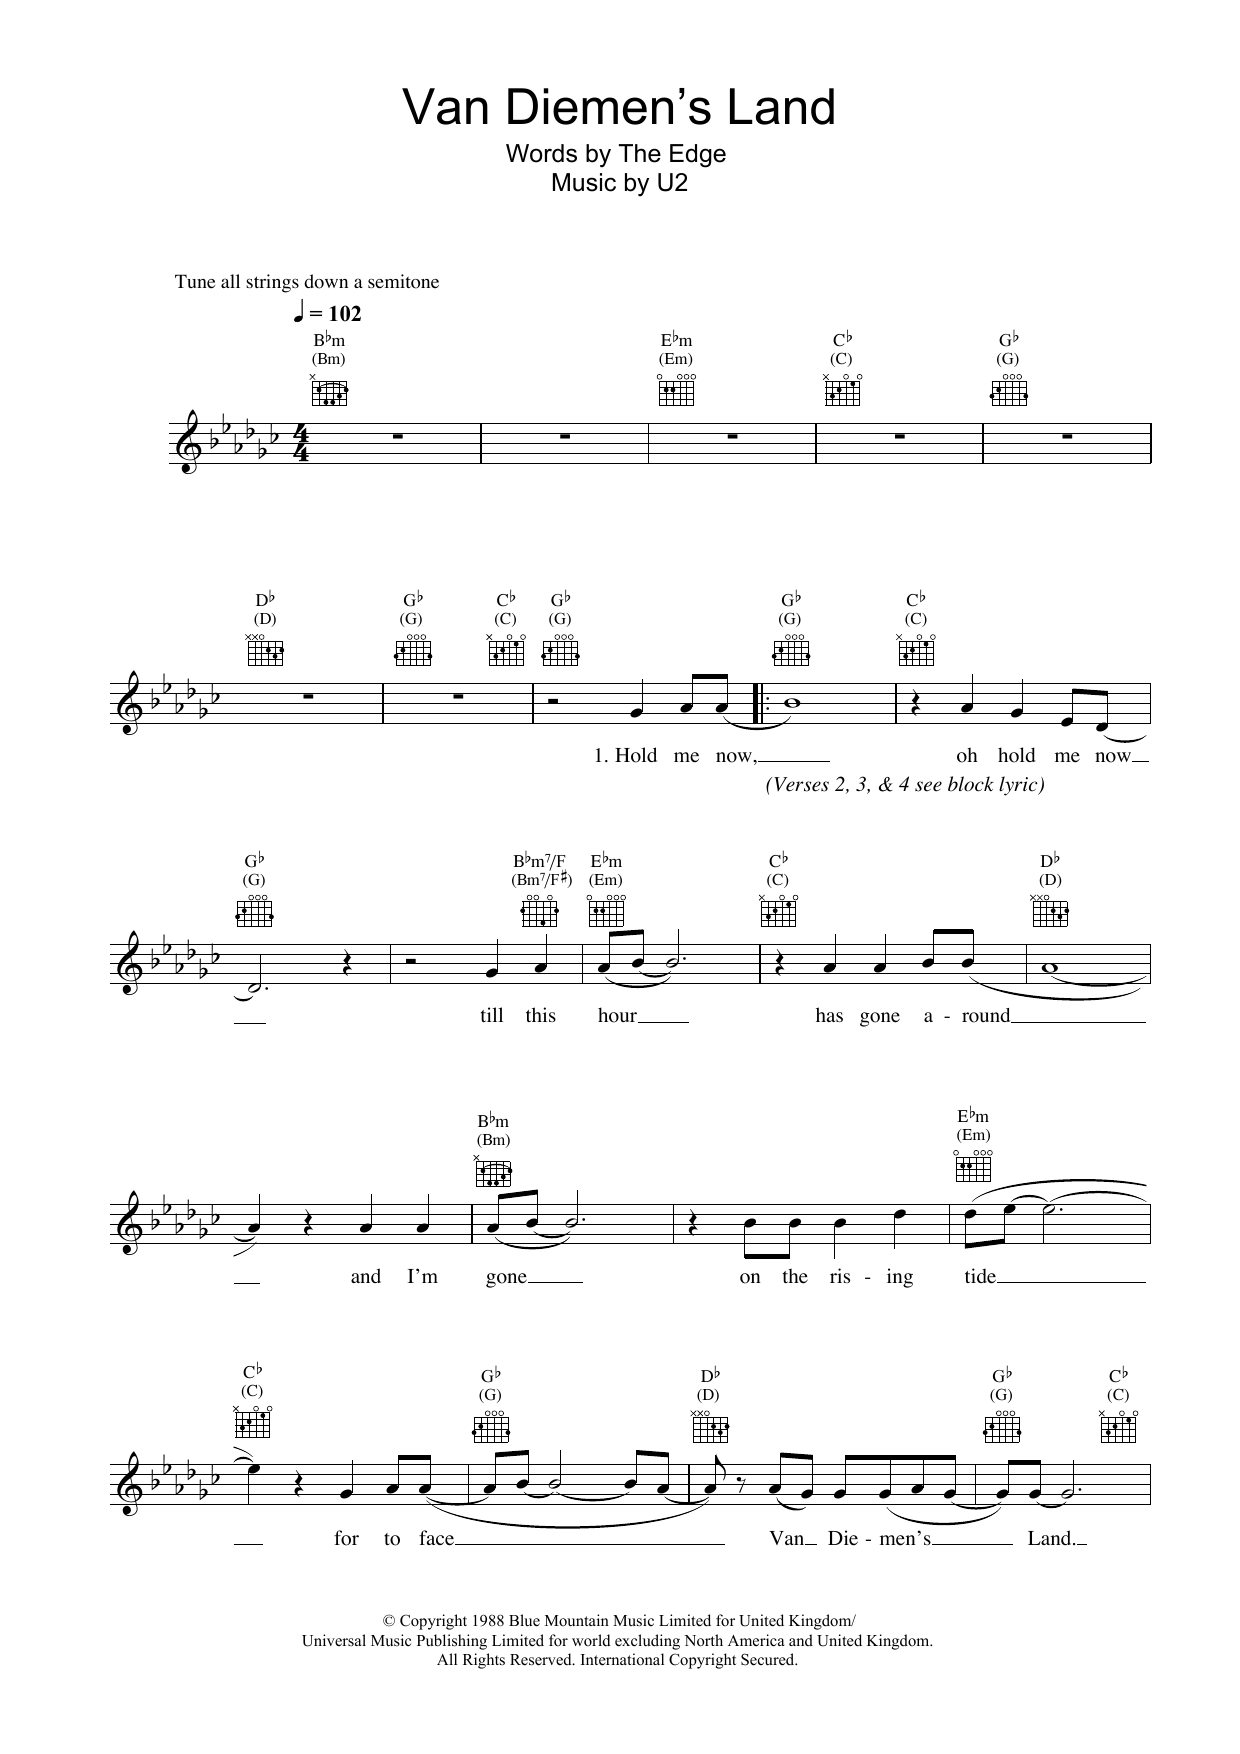 U2 Van Diemen's Land Sheet Music Notes & Chords for Melody Line, Lyrics & Chords - Download or Print PDF